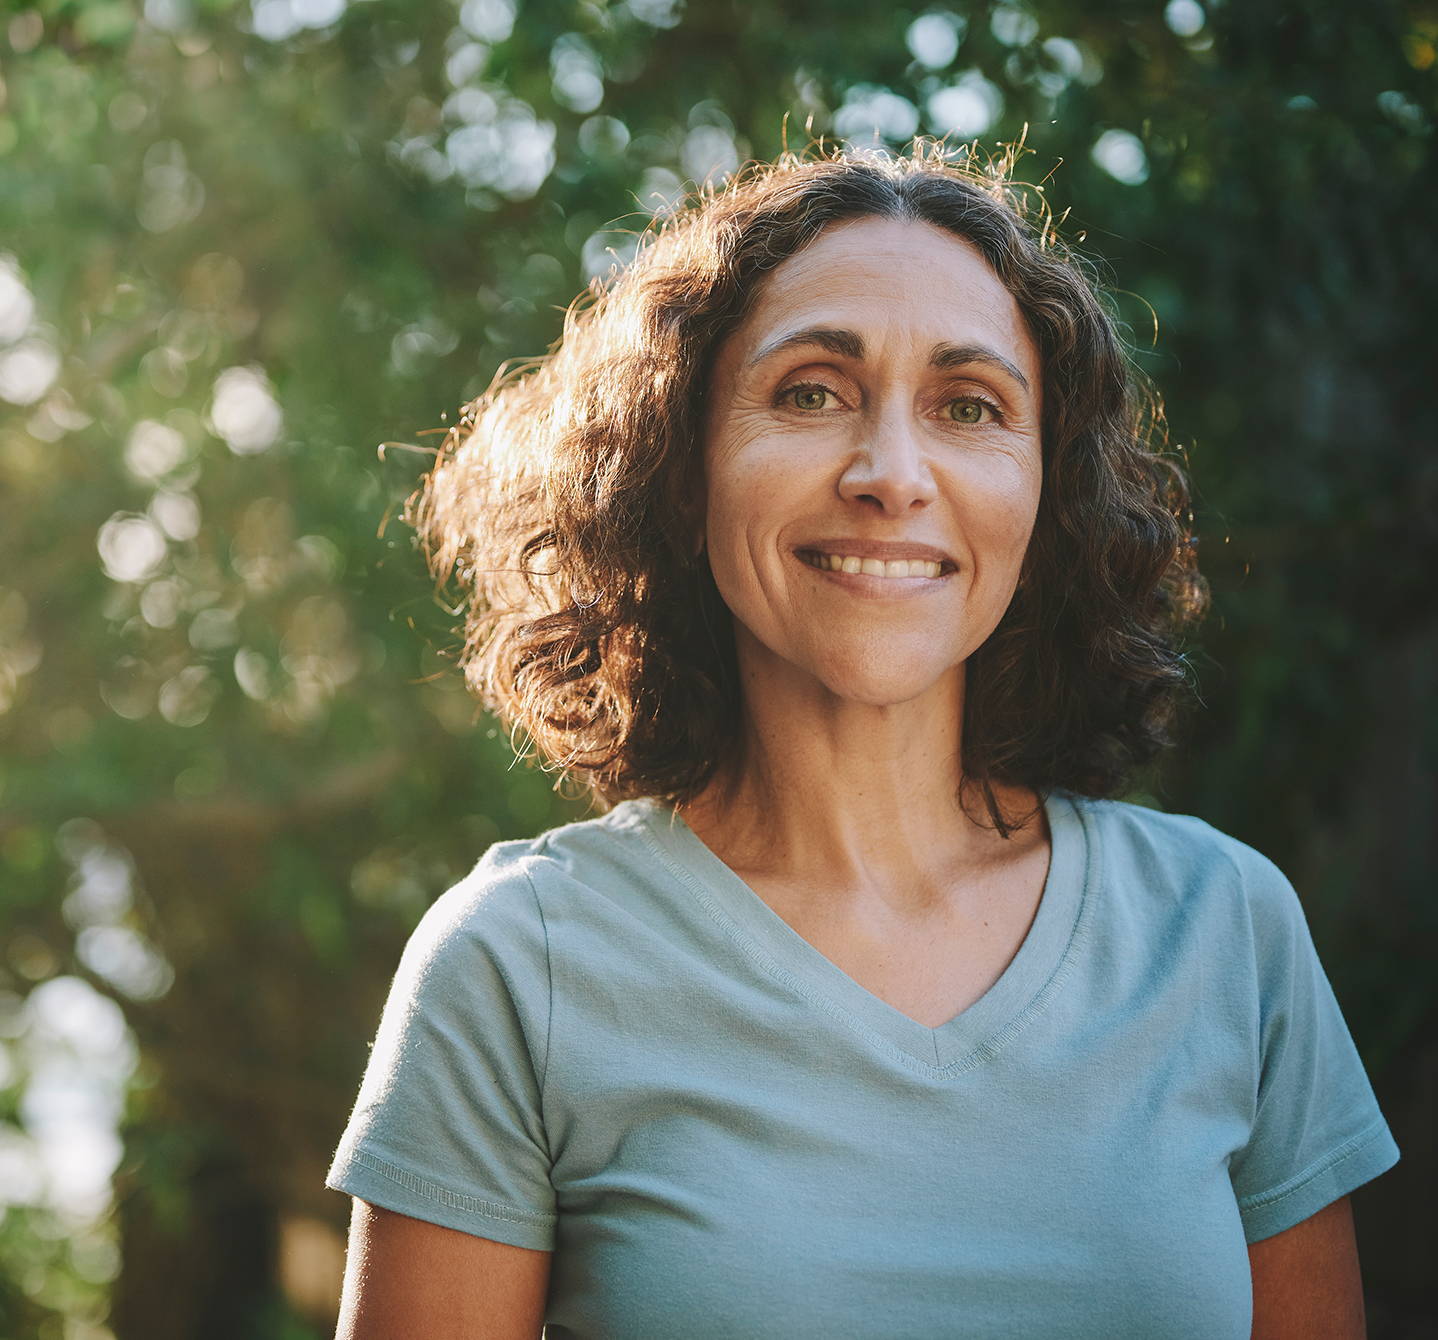 Eine Frau in einem T-Shirt lächelt in die Kamera und genießt einen Tag im Sommer im Freien, während im Hintergrund Sonnenlicht und Grünflächen zu sehen sind.